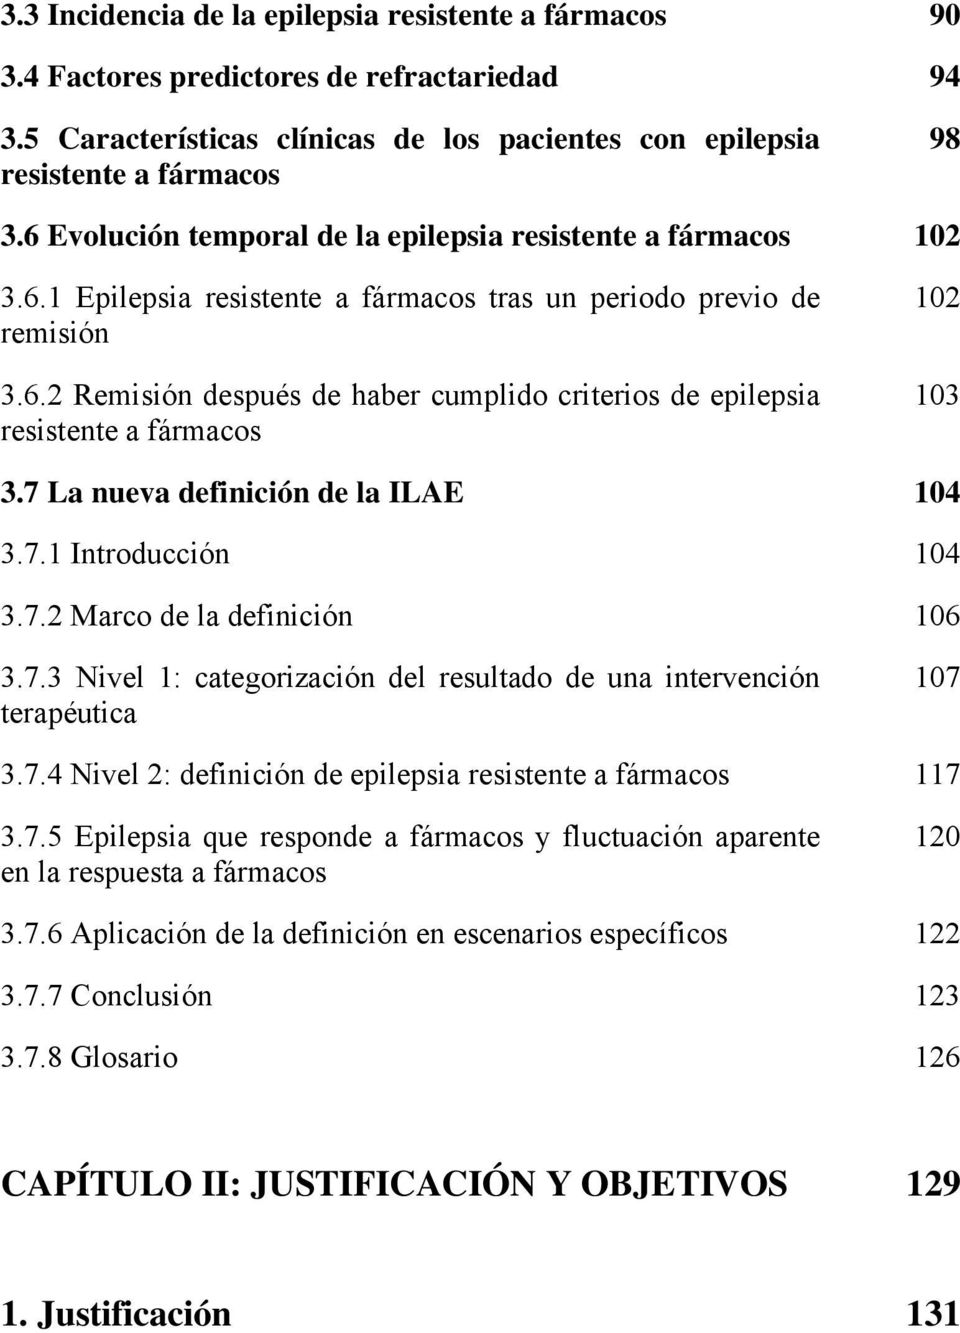 7 La nueva definición de la ILAE 104 3.7.1 Introducción 104 3.7.2 Marco de la definición 106 3.7.3 Nivel 1: categorización del resultado de una intervención terapéutica 107 3.7.4 Nivel 2: definición de epilepsia resistente a fármacos 117 3.